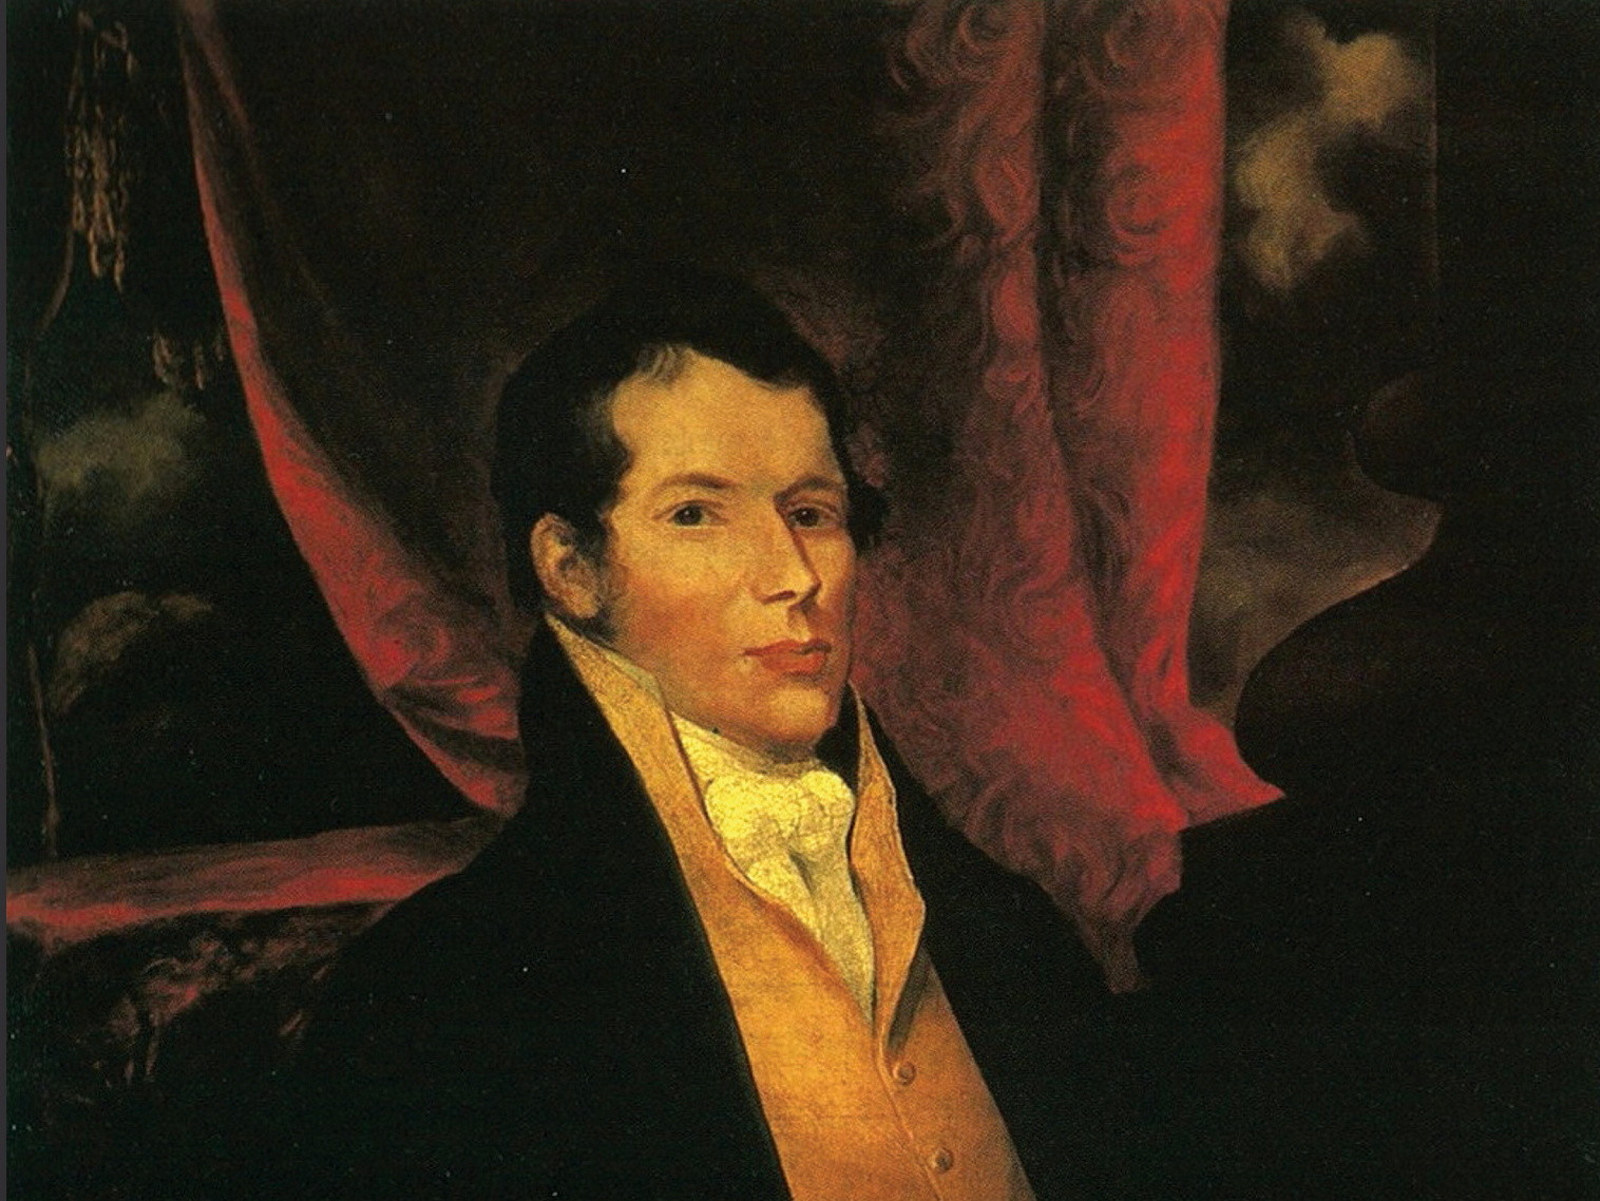 Portrait of man against dark background.